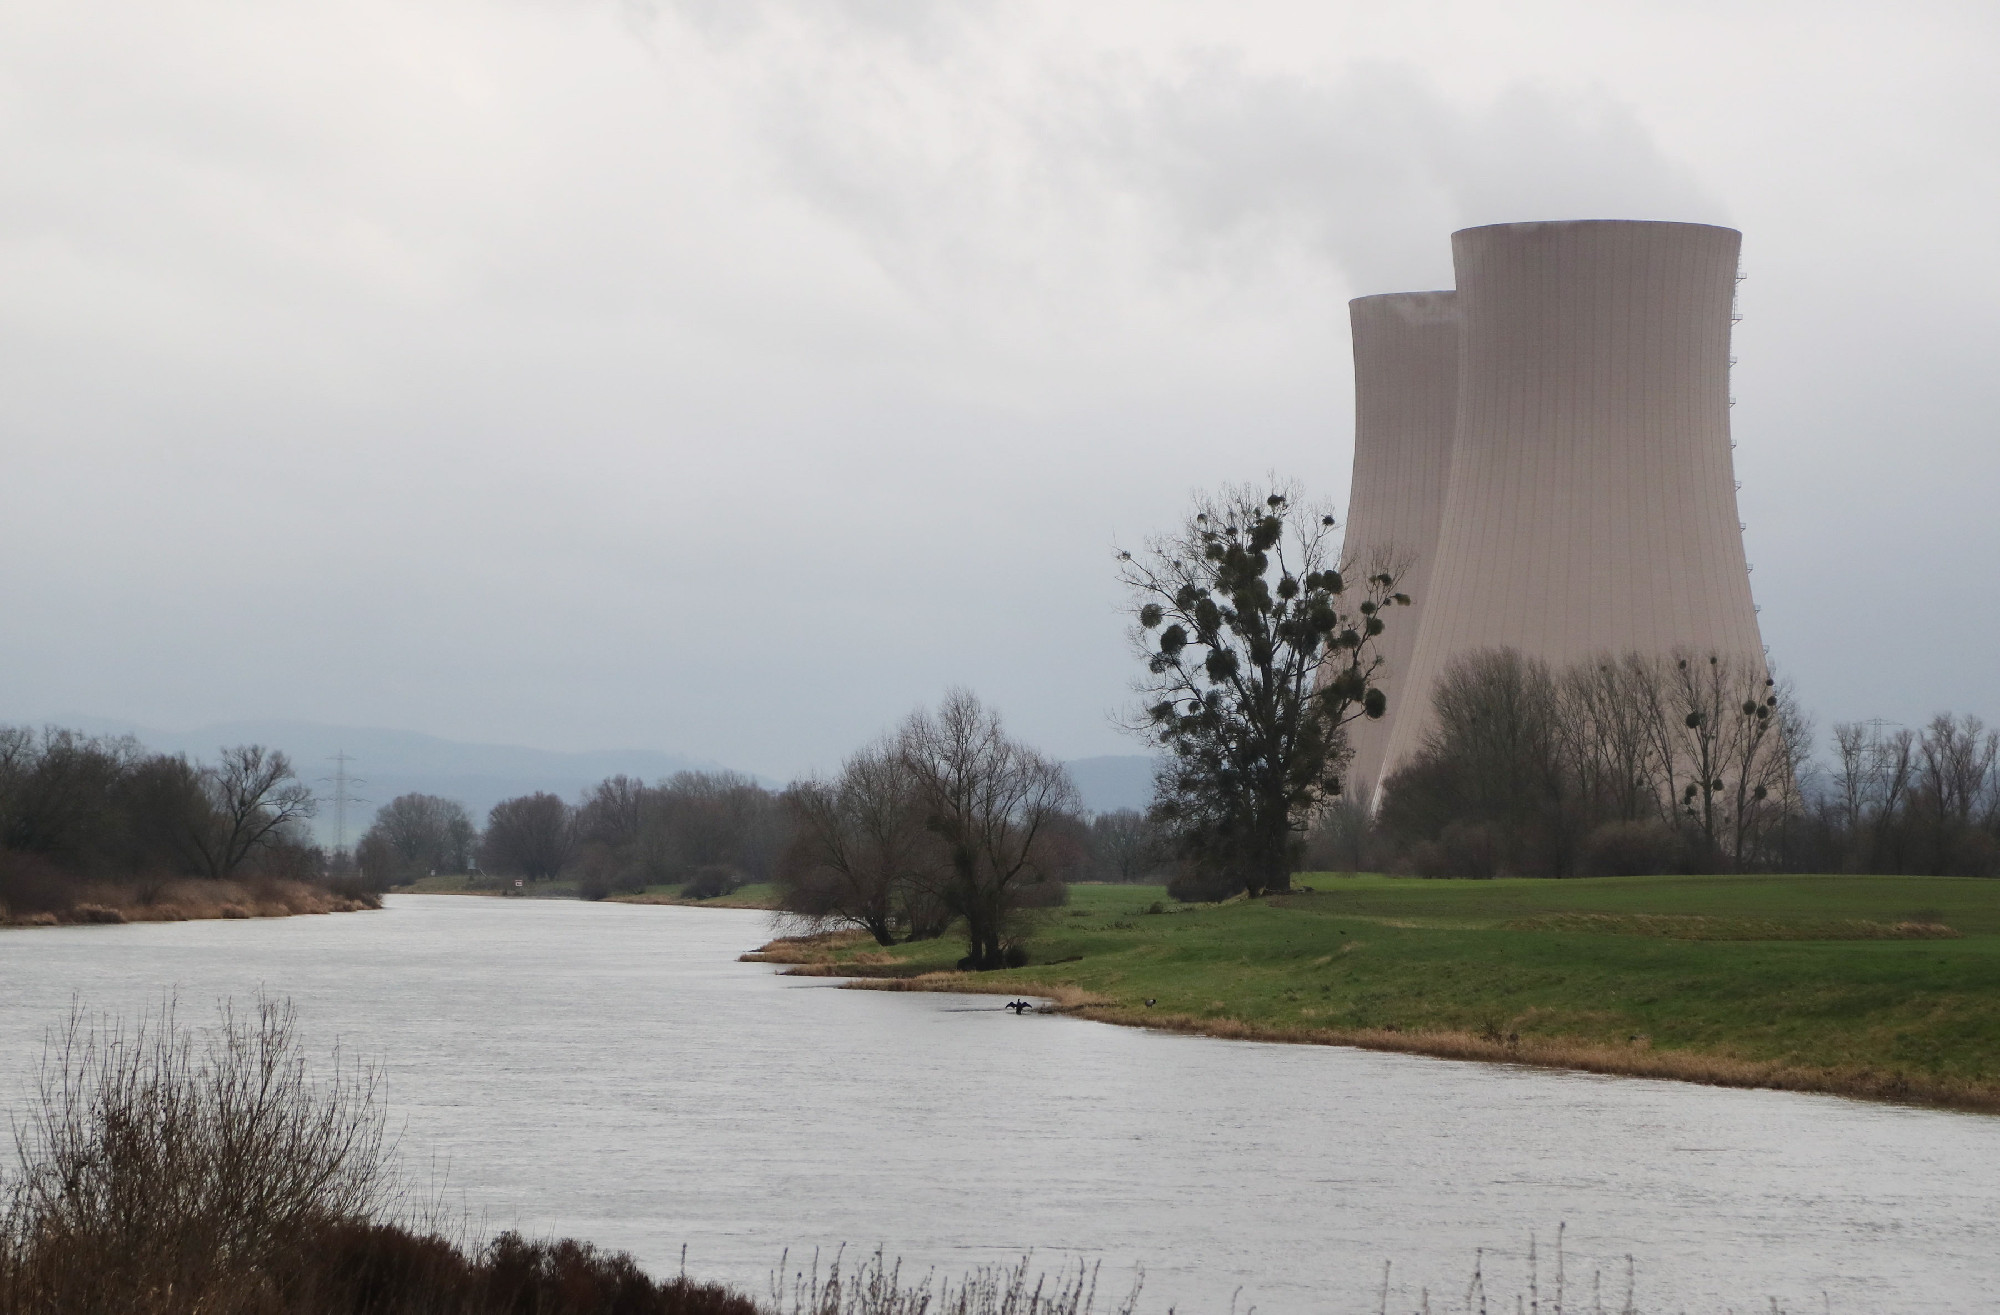 Mindhárom németországi atomerőmű üzemidejét meghosszabbítják